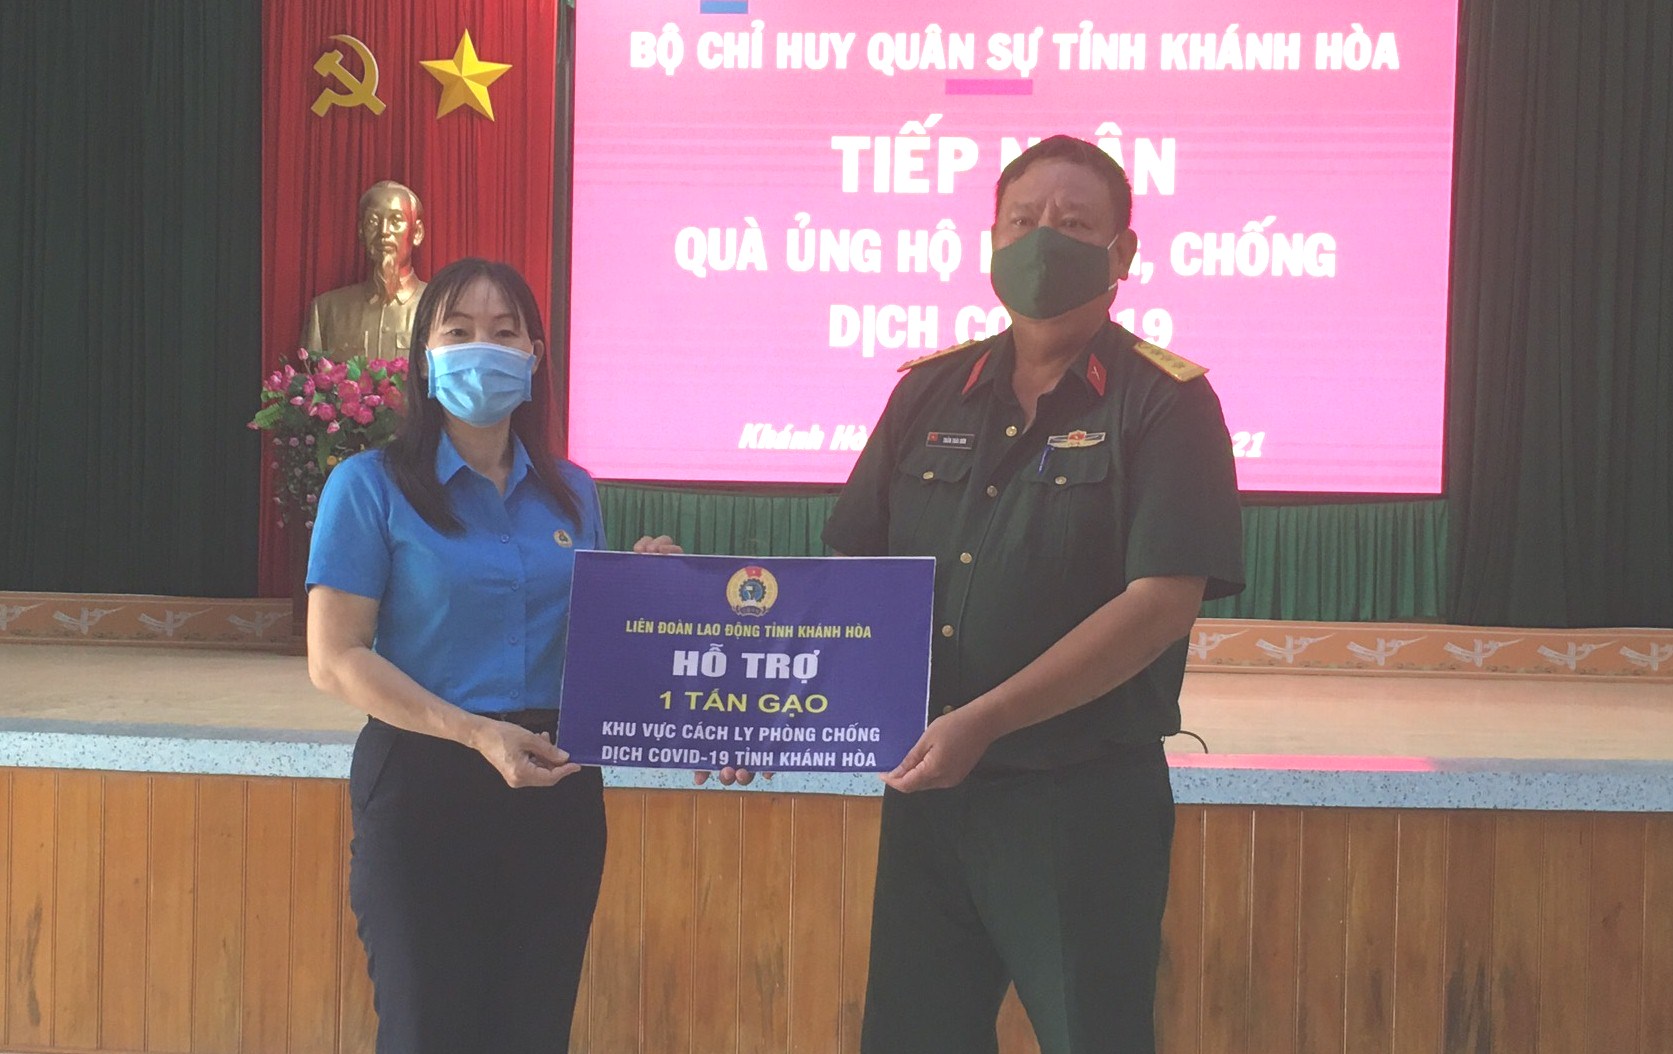 Đại diện Liên đoàn Lao động tỉnh Khánh Hòa trao 1 tấn gạo cho Bộ Chỉ huy Quân sự tỉnh Khánh Hòa để hỗ trợ người dân trong khu cách ly.